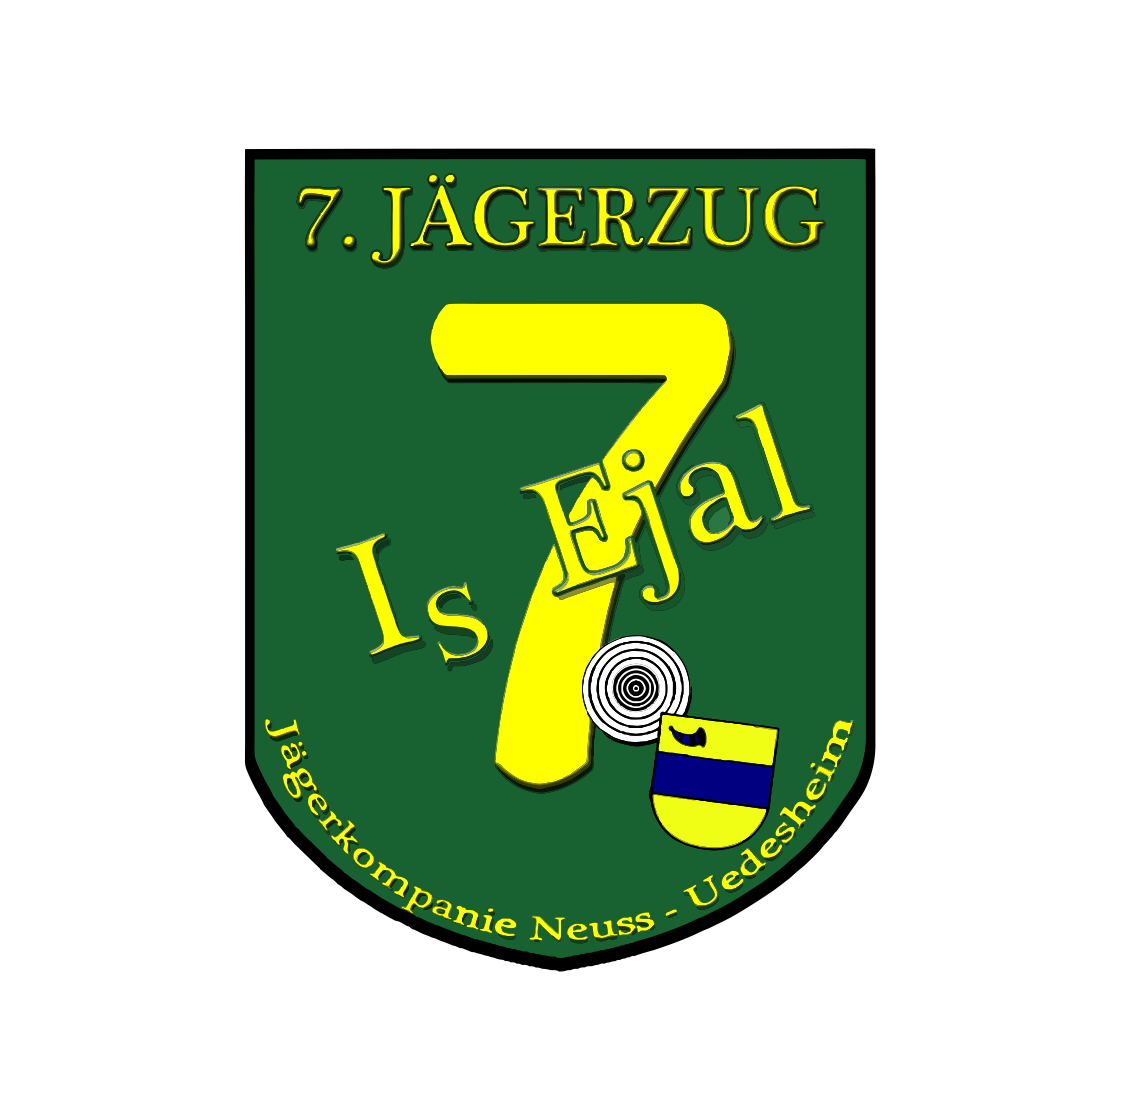 7. Jägerzug Is Ejal